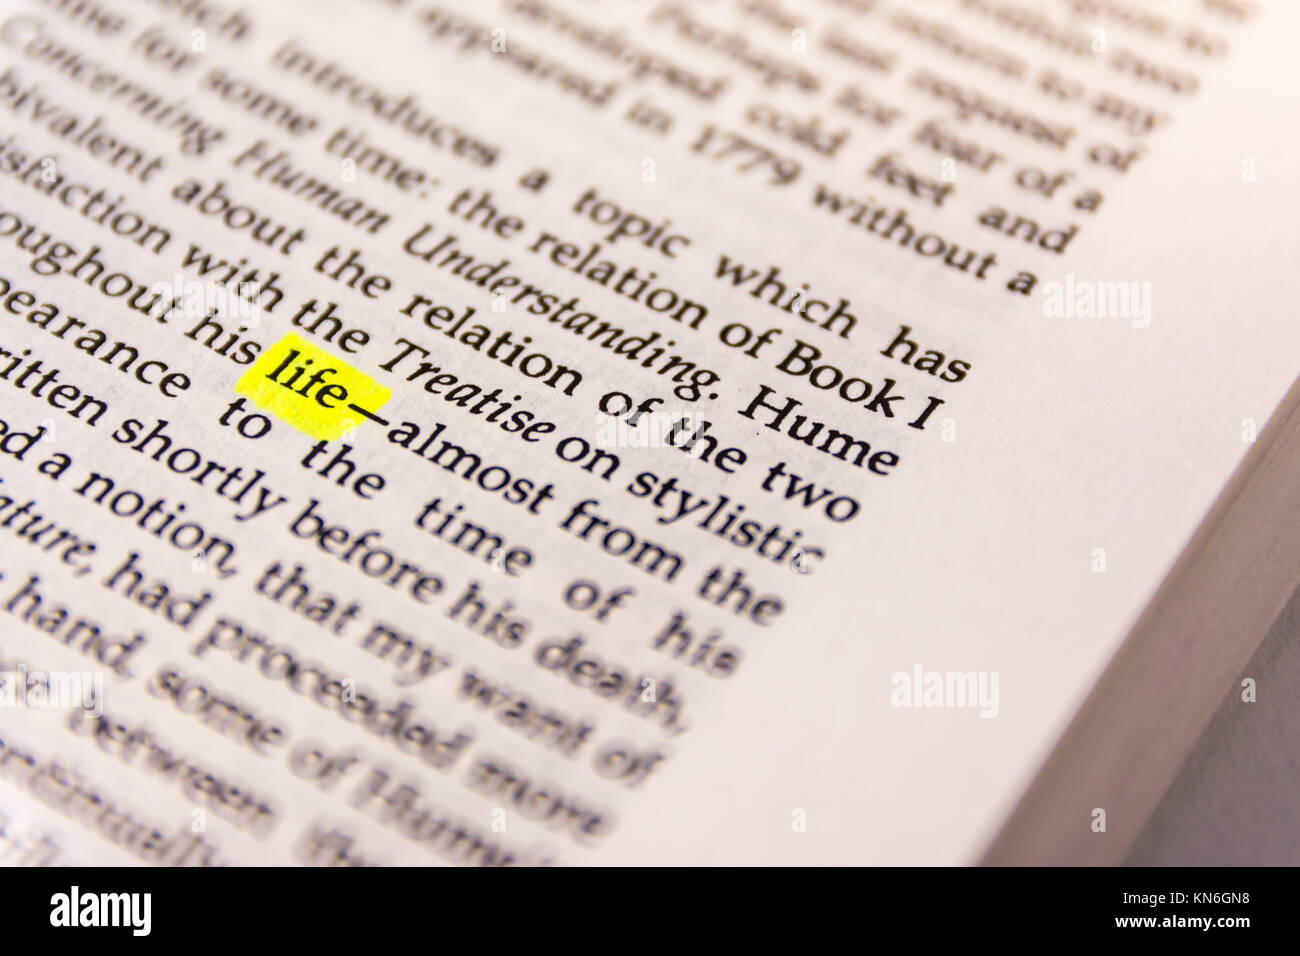 Prenota parola evidenziata in giallo marcatore fluorescente carta vecchia vita per parola chiave Foto Stock